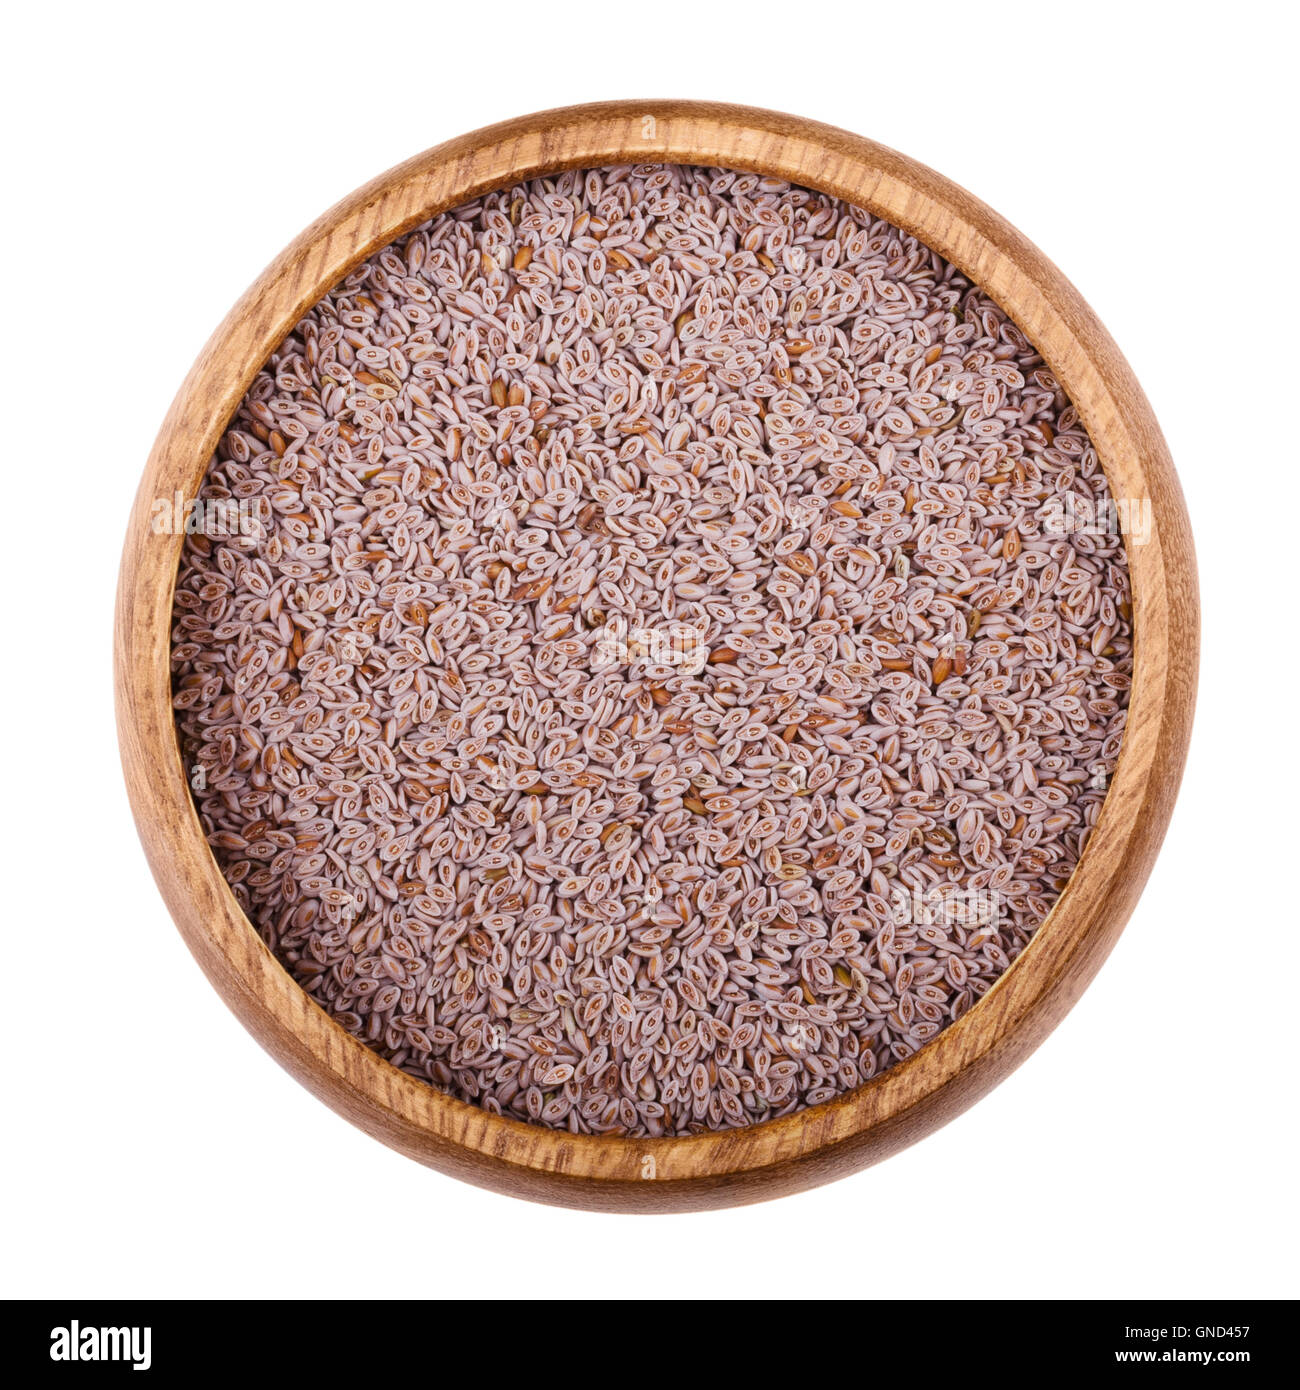 Psillio gusci di semi in una ciotola di legno su sfondo bianco. Frutta secca, utilizzato in cucina per produrre una mucillagine commestibili. Foto Stock